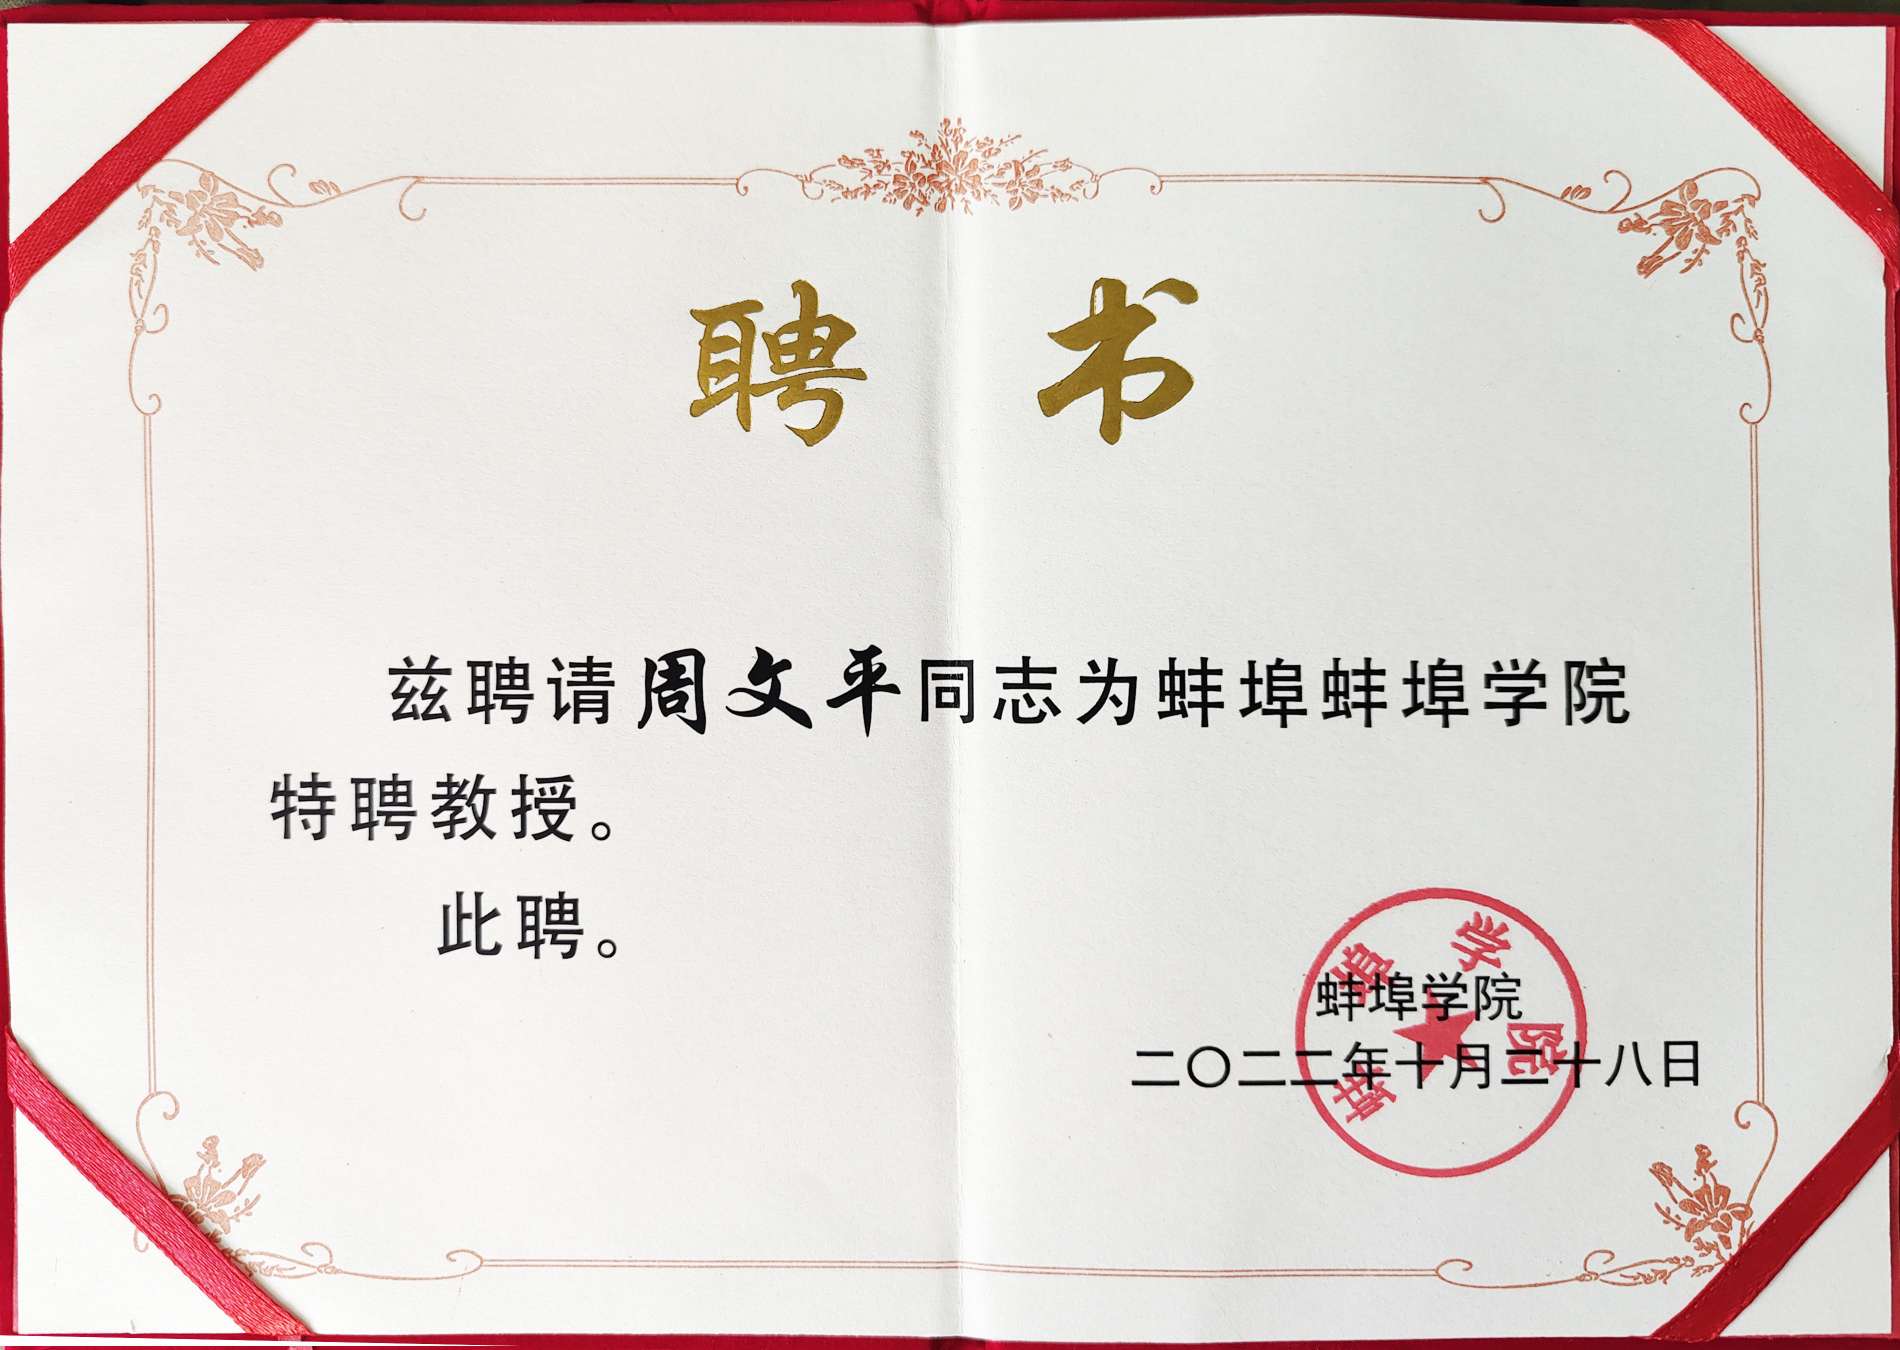 Колледж Бэнбу наградил Лонг Хуа Чжоу Вэньпина почетным сертификатом «Заслуженный профессор»!